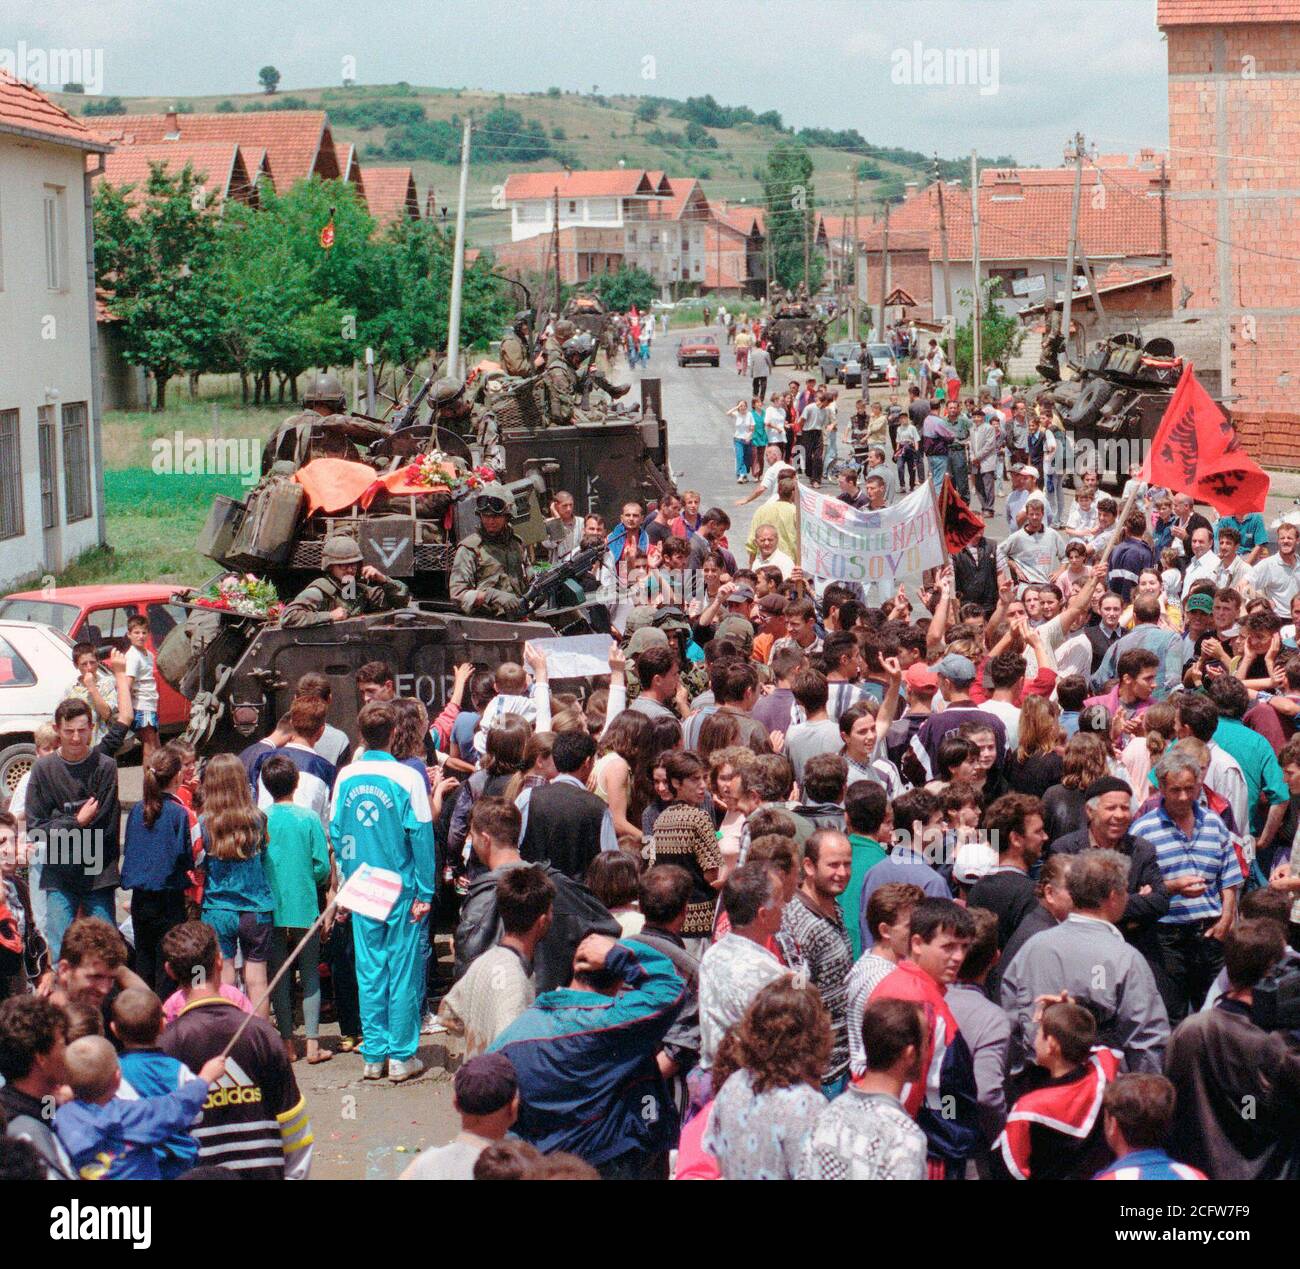 1999 - Ethenic Albaner versammeln sich in den Straßen für eine Parade statt die amerikanischen Streitkräfte im Kosovo Dorf Koretin zu ehren. Marines an Bord ihrer LAV-25, Leichte gepanzerte Fahrzeuge sind entlang der Straße Seite gesehen. Stockfoto